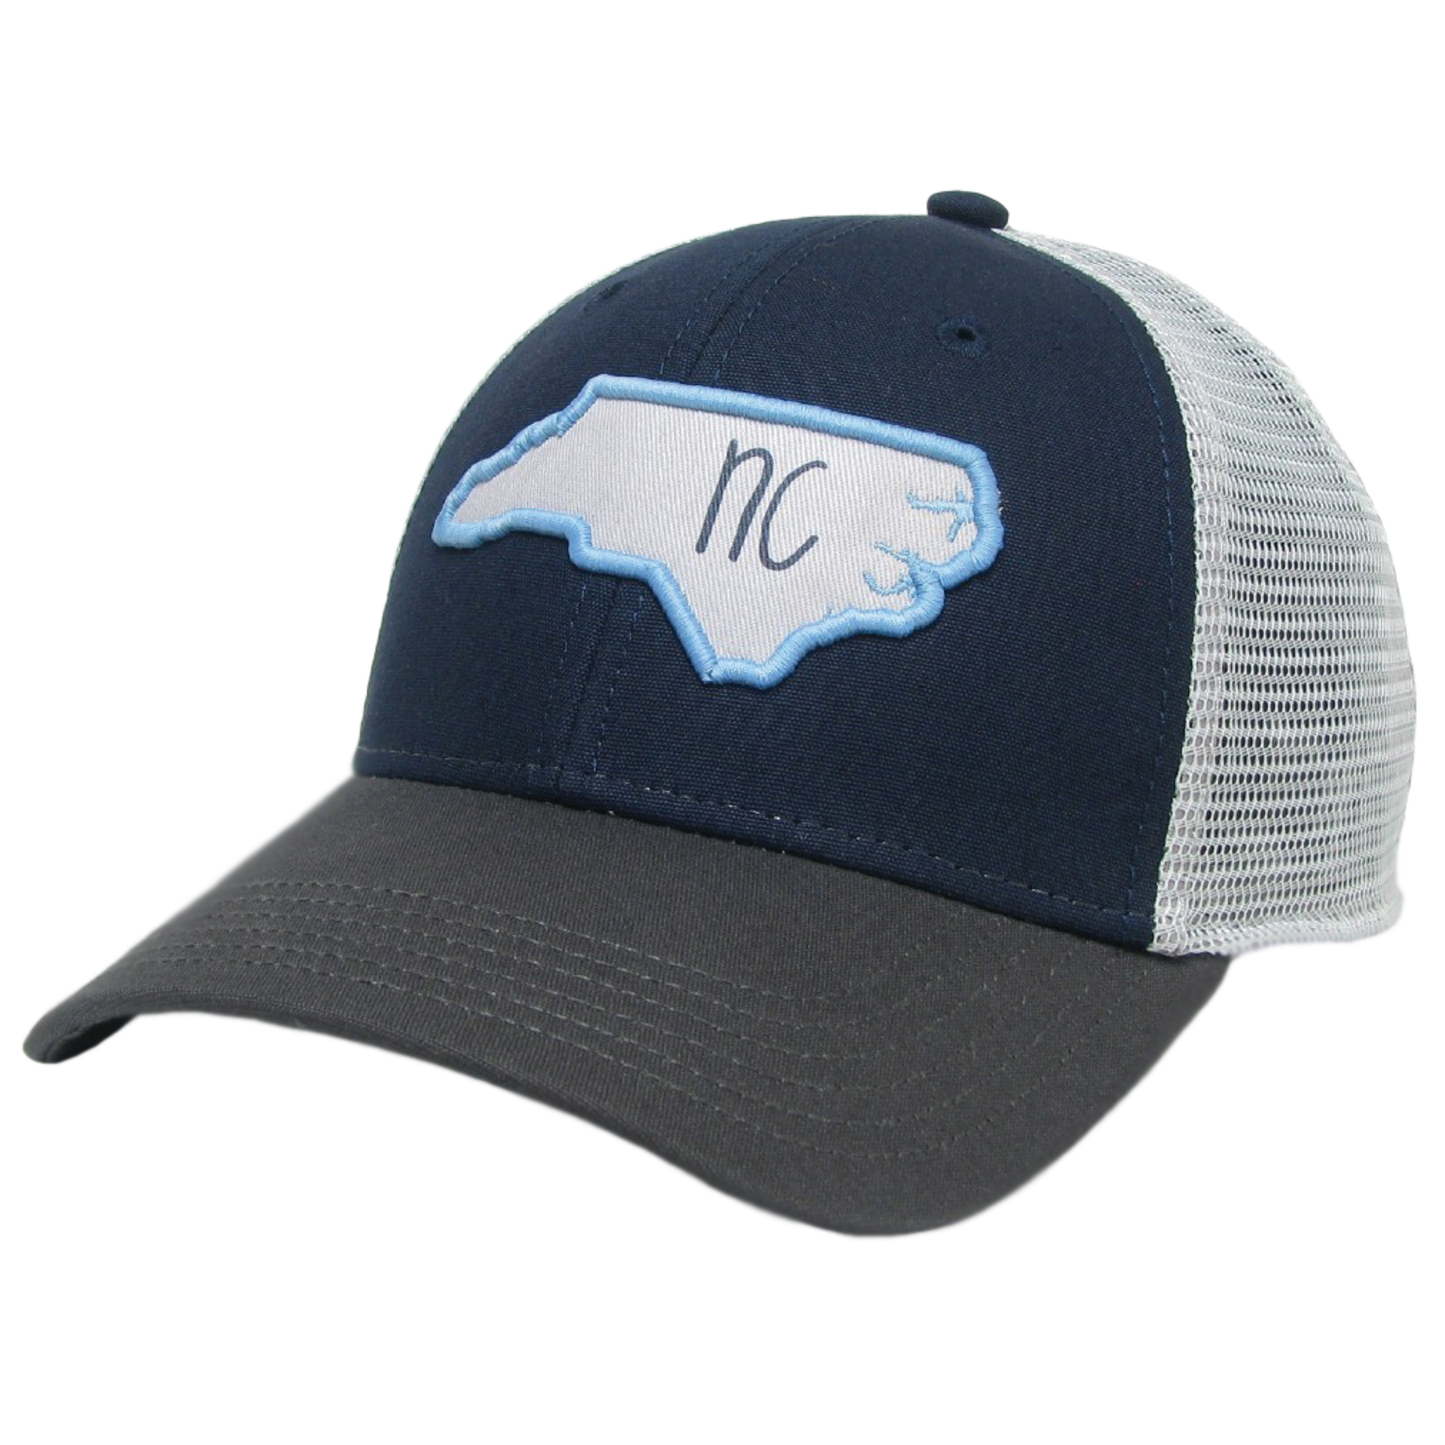 North Carolina Mid-Pro Trucker Hat in Navy/Dark Grey/Silver